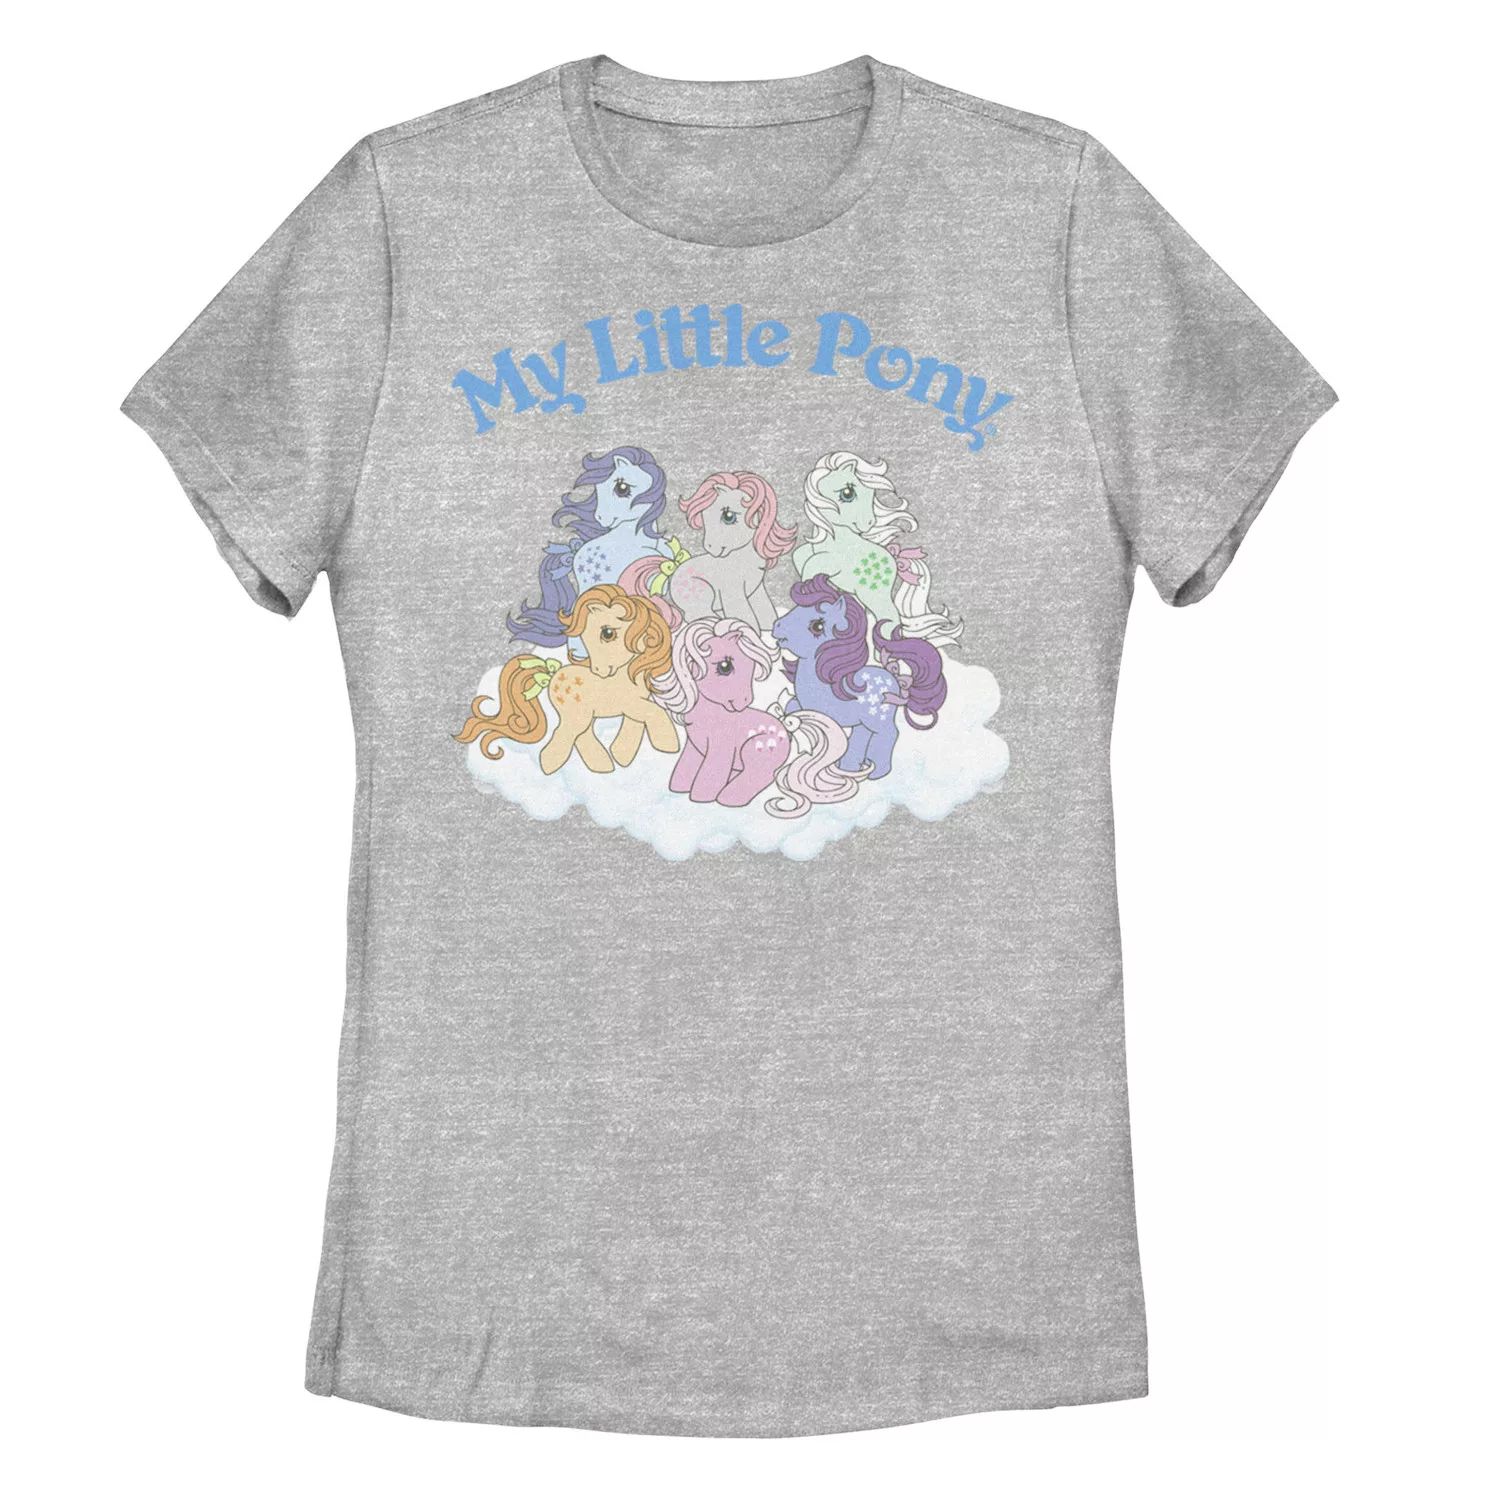 Детская классическая футболка с рисунком My Little Pony Group Shot My Little Pony детская футболка my little pony pegasister с ретро графикой 1983 года my little pony